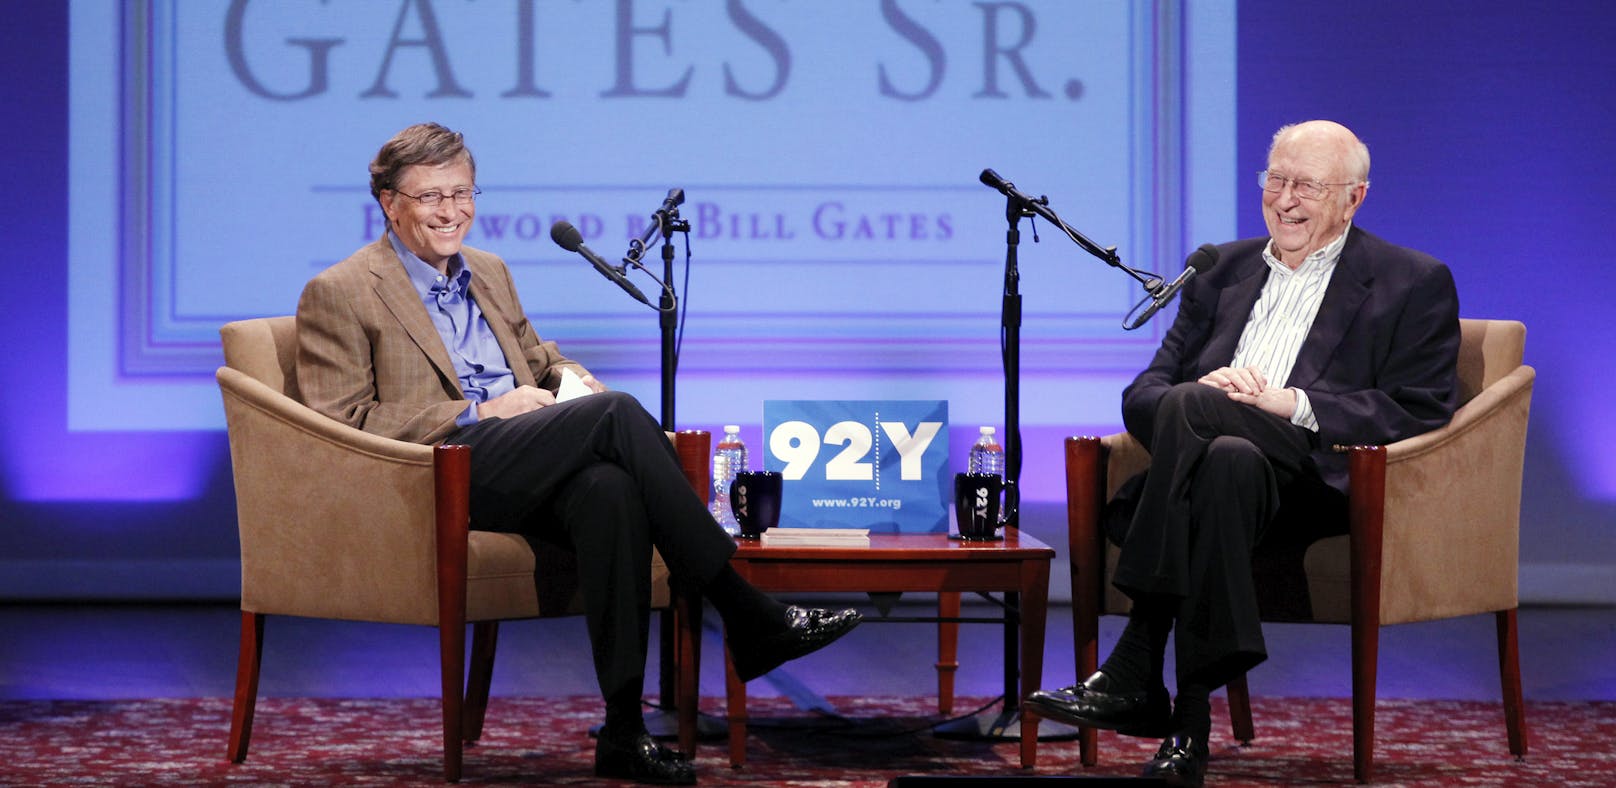 Bill Gates mit seinem Vater.